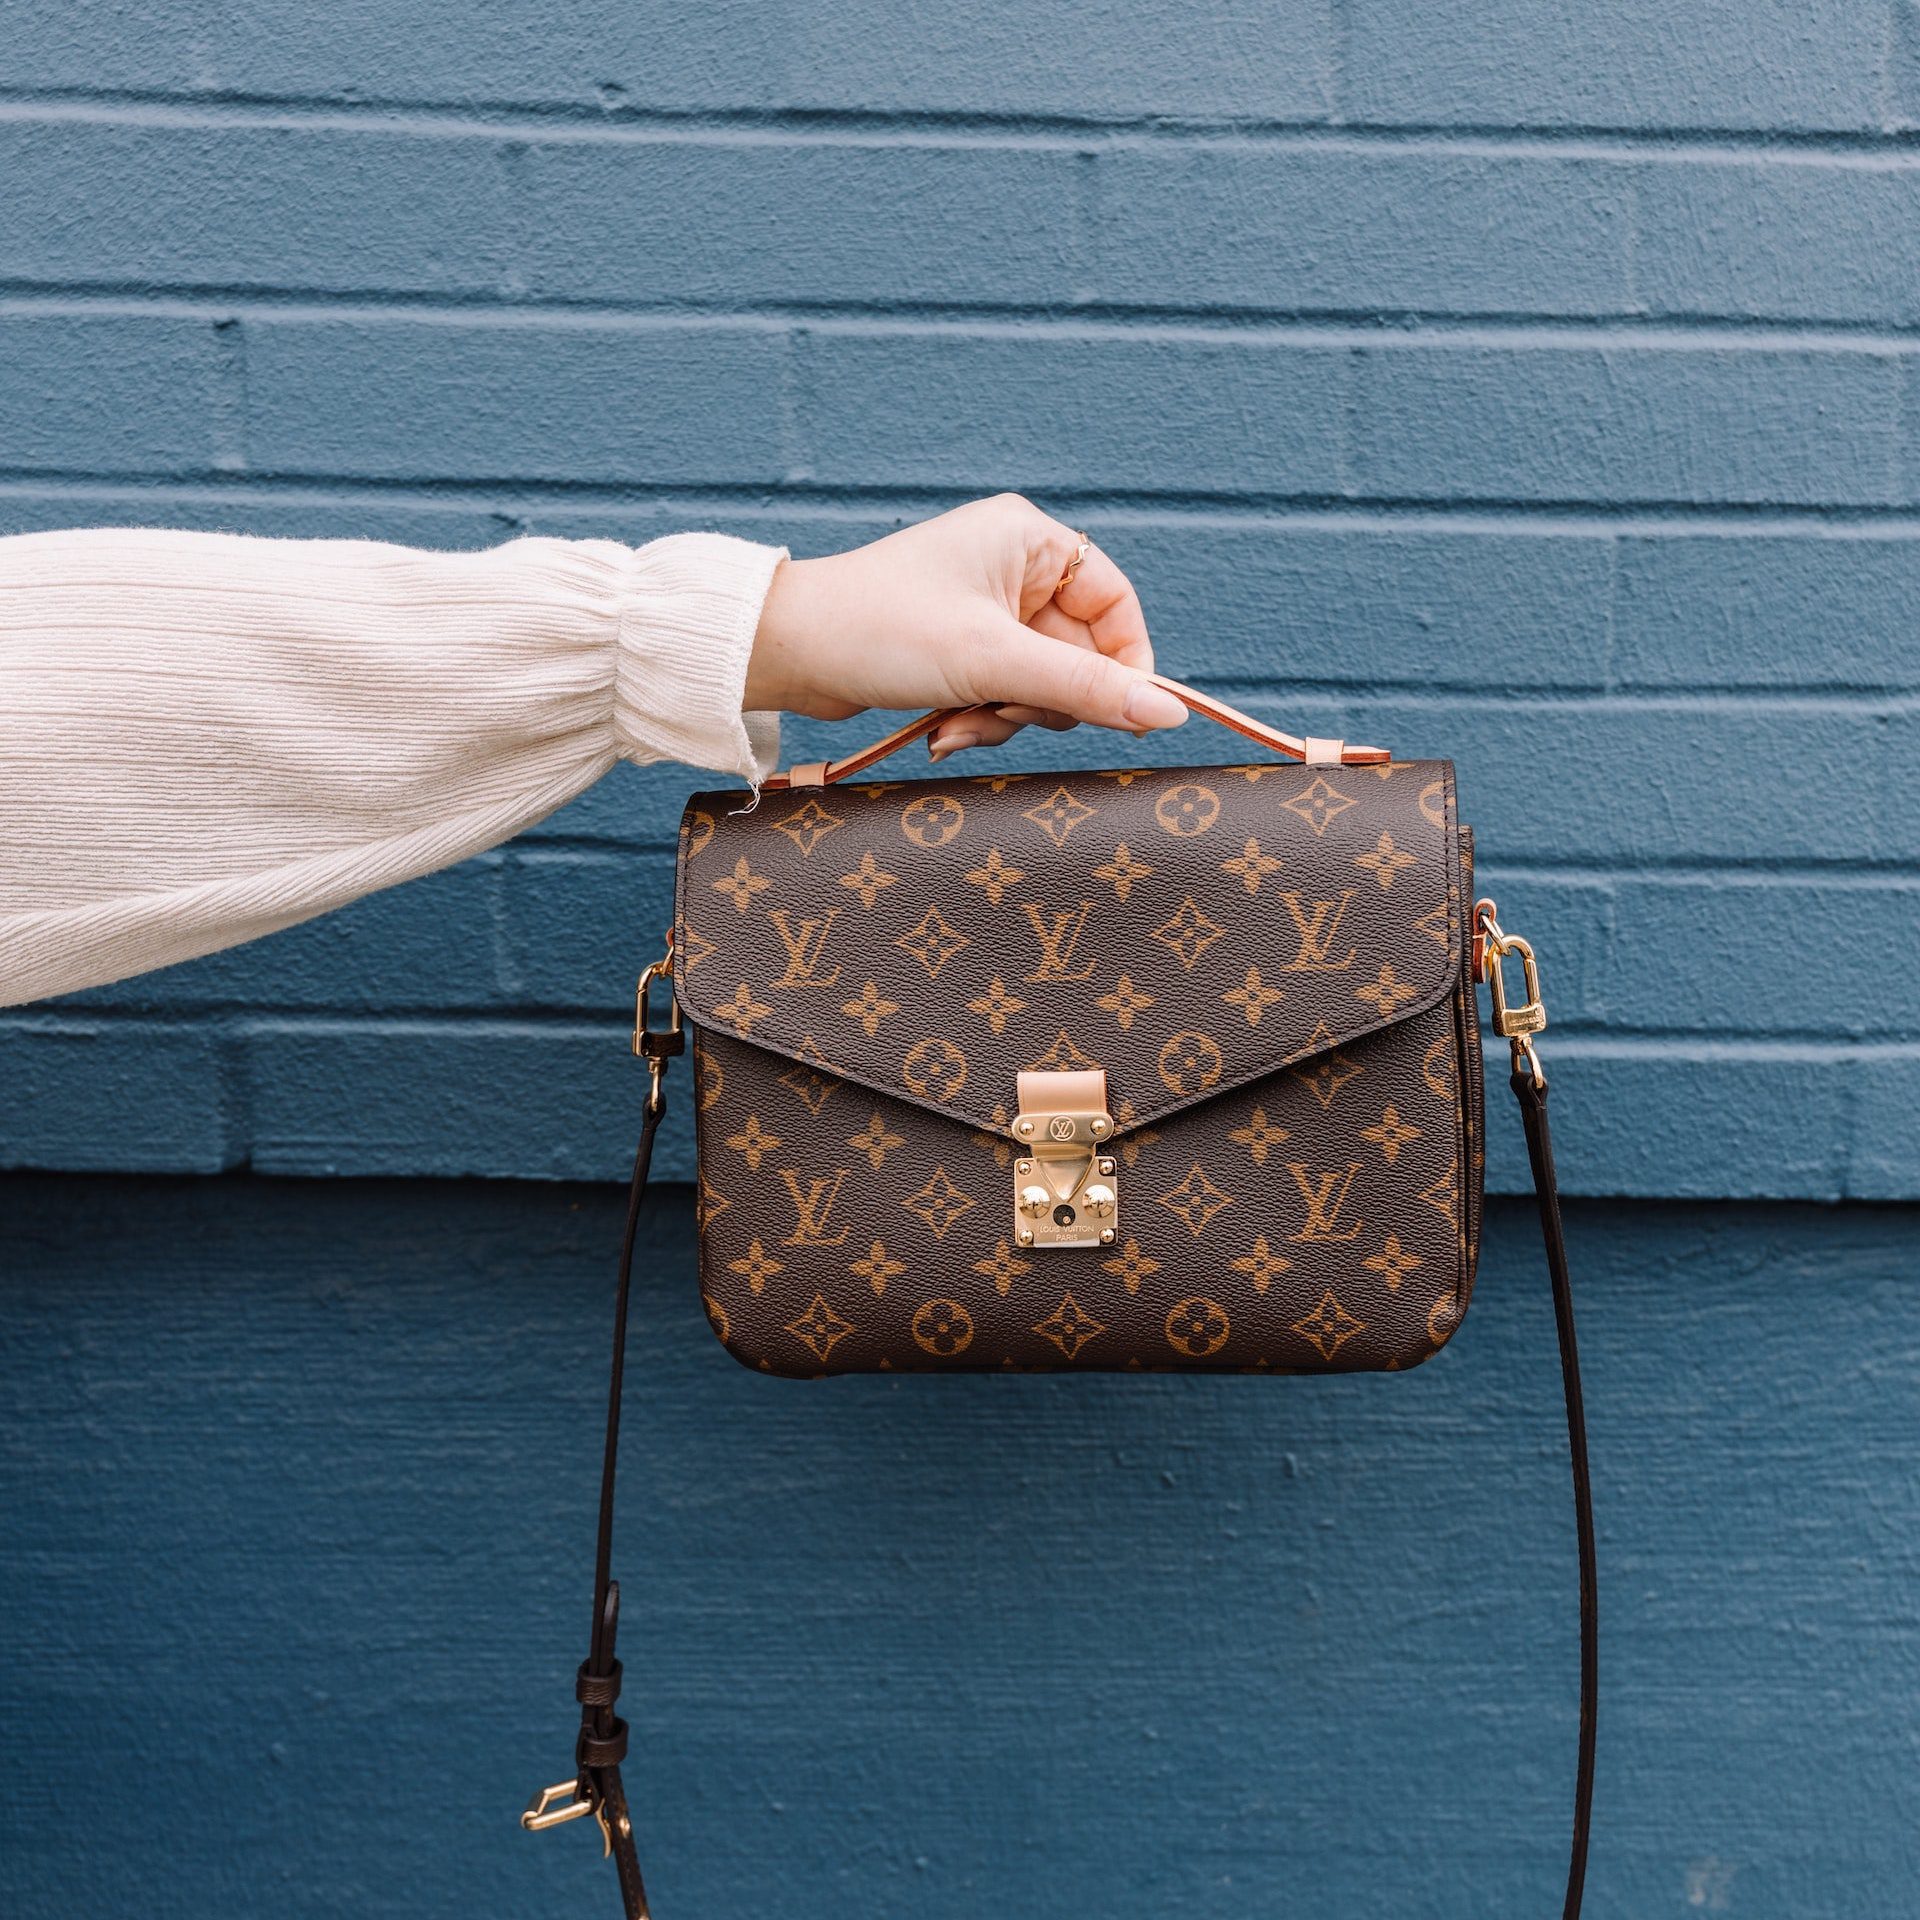 How to spot a fake Louis Vuitton handbag